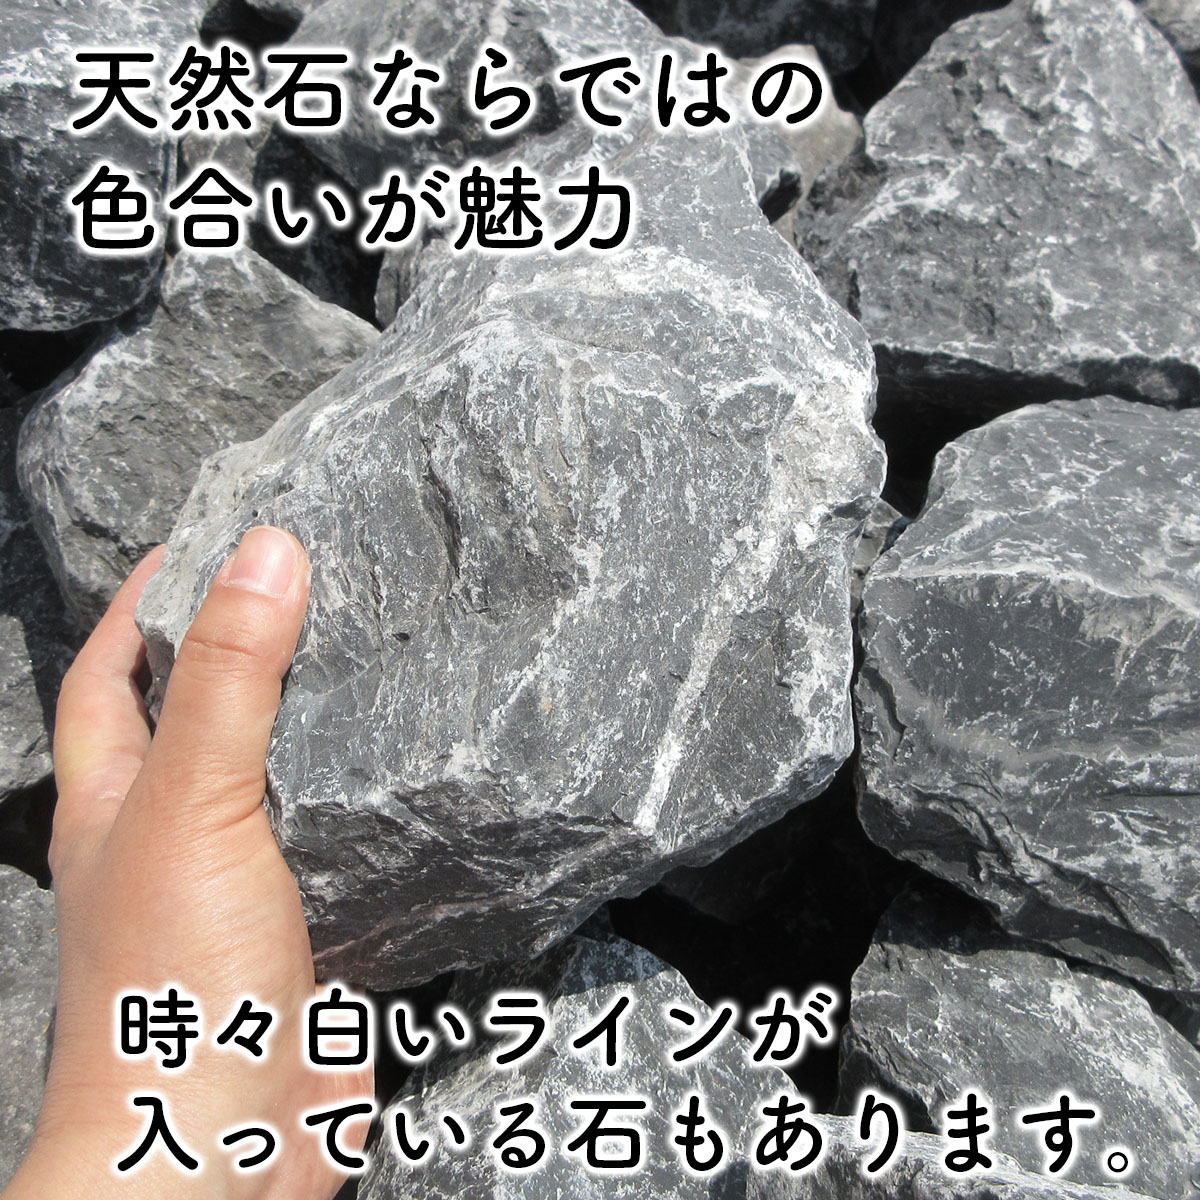 庭石 ロックガーデン 石 割栗石 黒 L 22kg ガーデニング 石 乱形石 